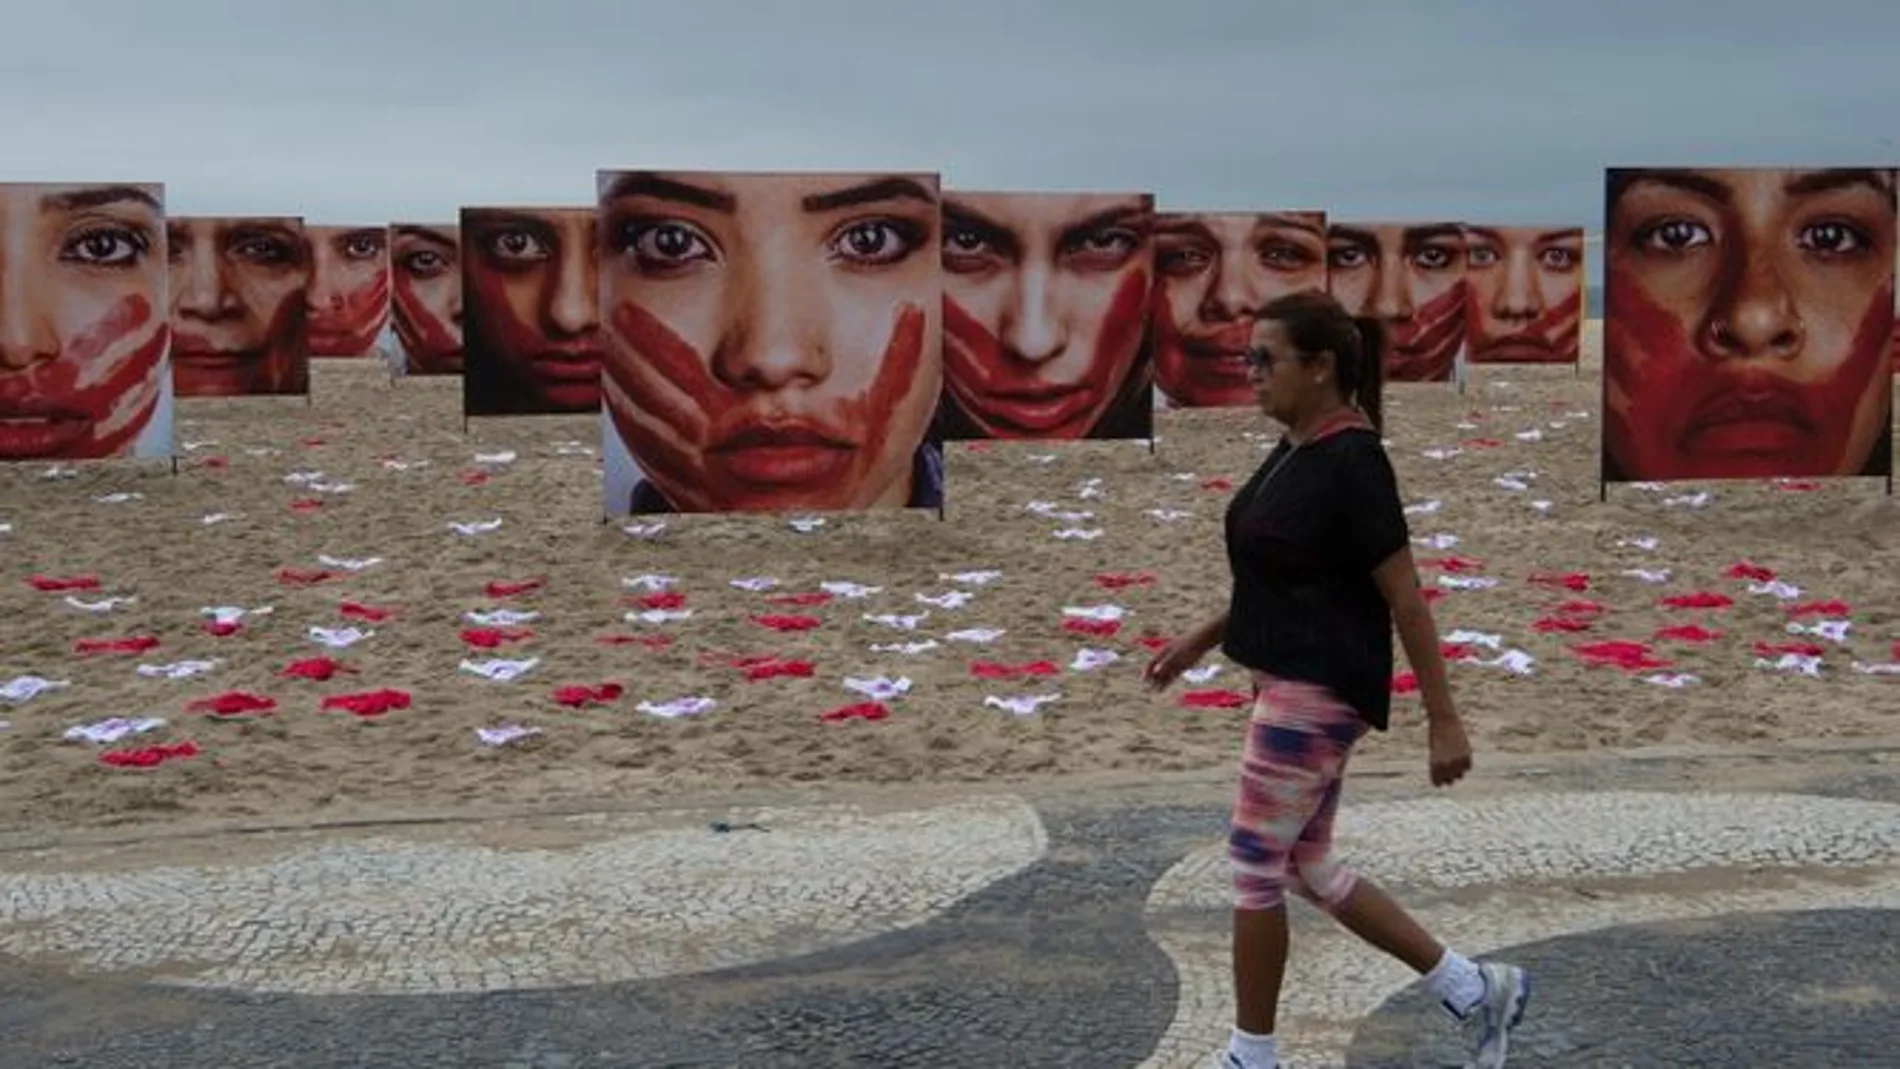 Las 420 bragas en la playa representan las violaciones cometidas en Brasil cada tres días